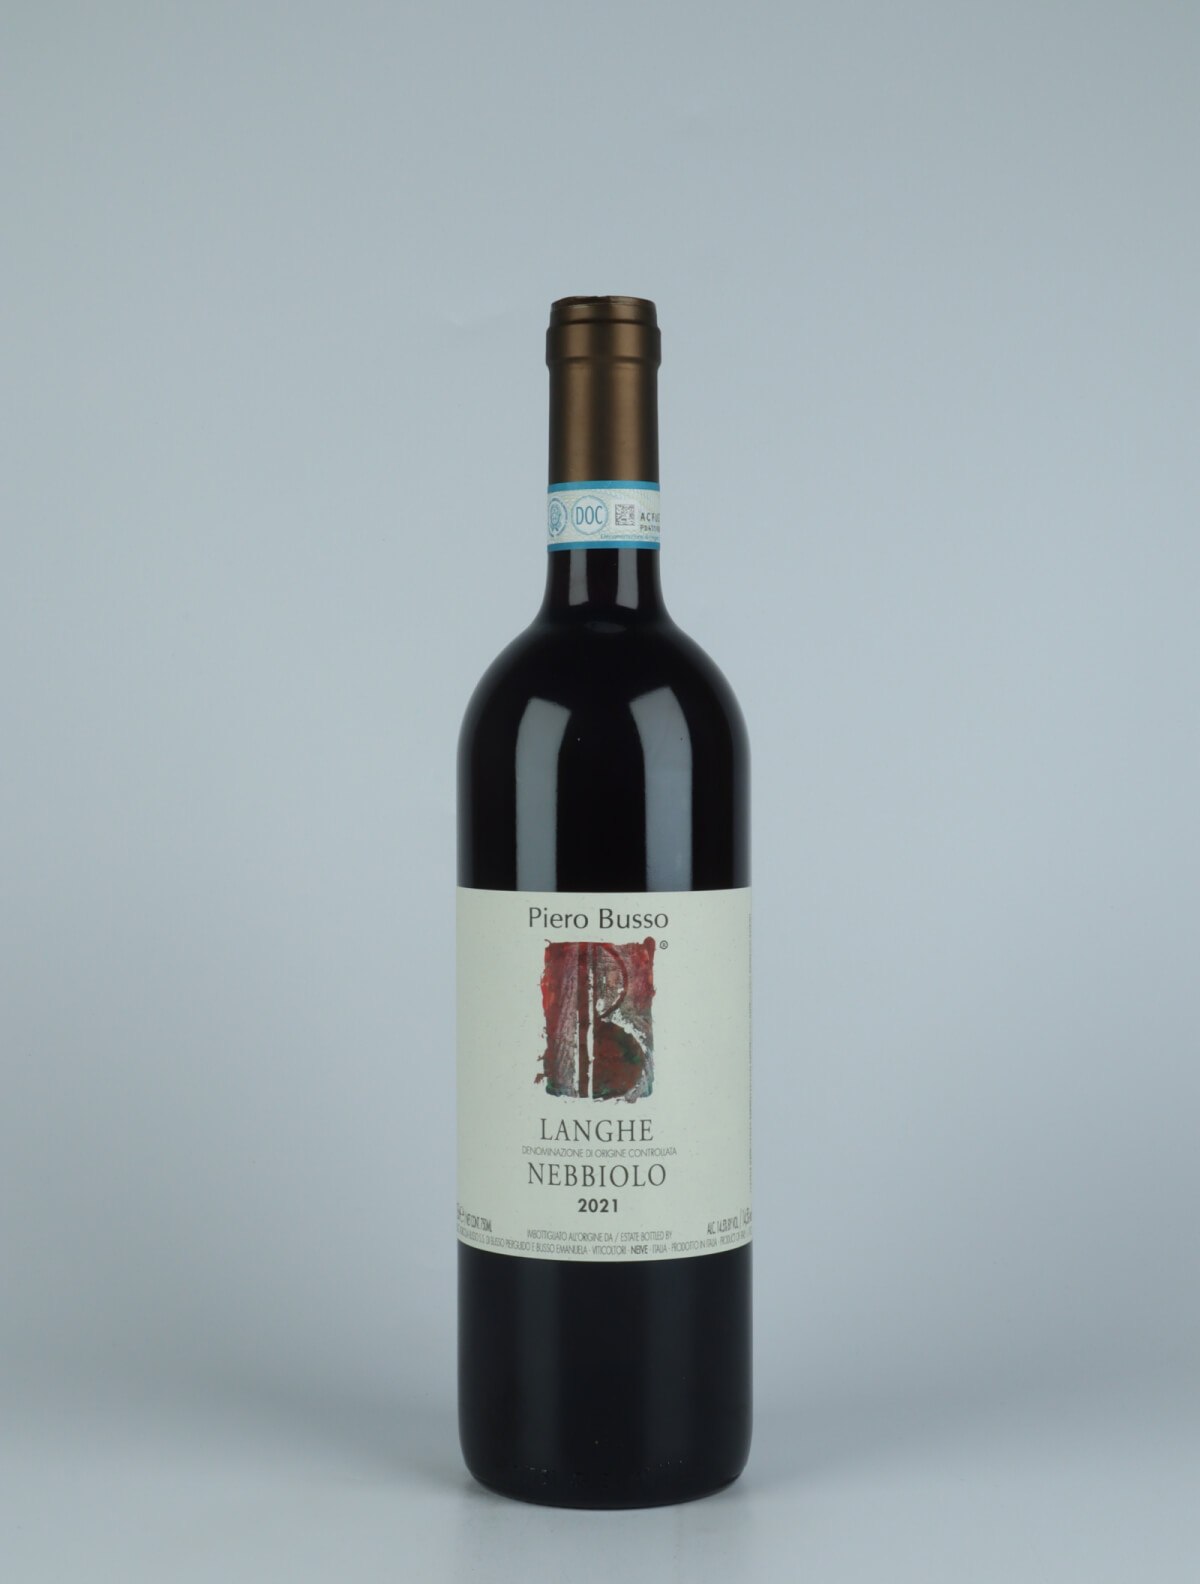 En flaske 2021 Langhe Nebbiolo Rødvin fra Piero Busso, Piemonte i Italien